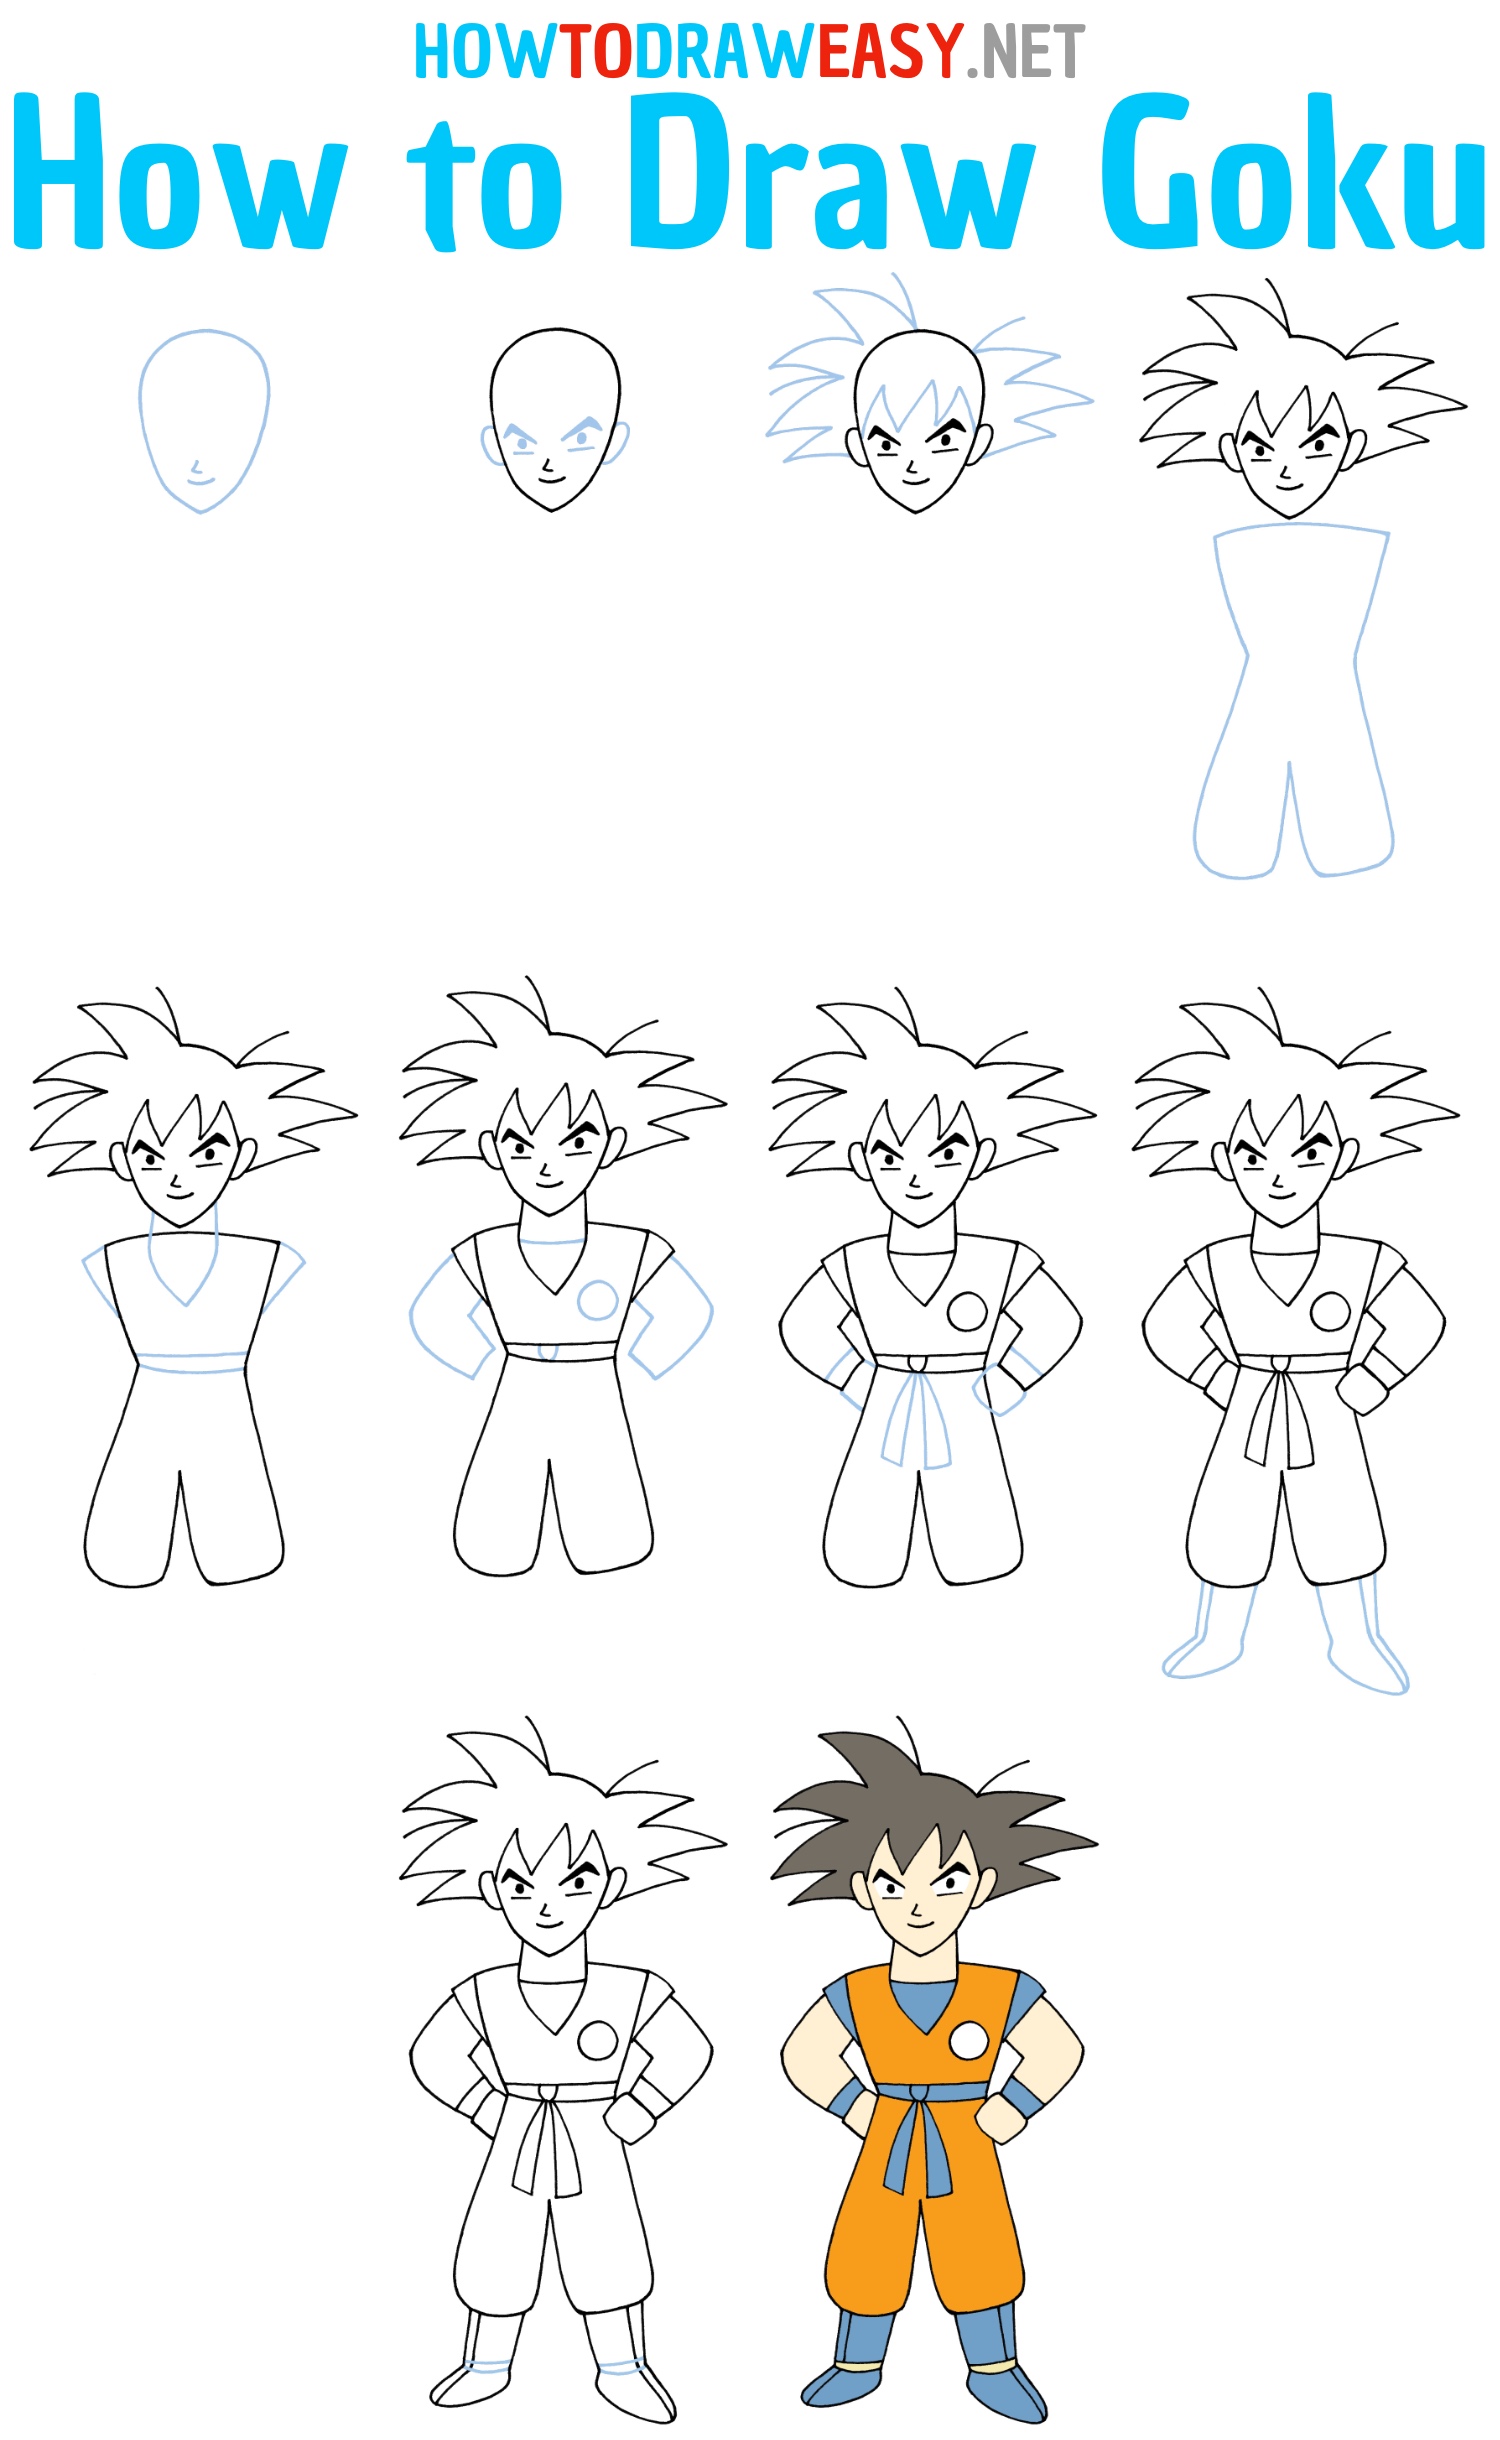 How to Draw Goku Step by Step